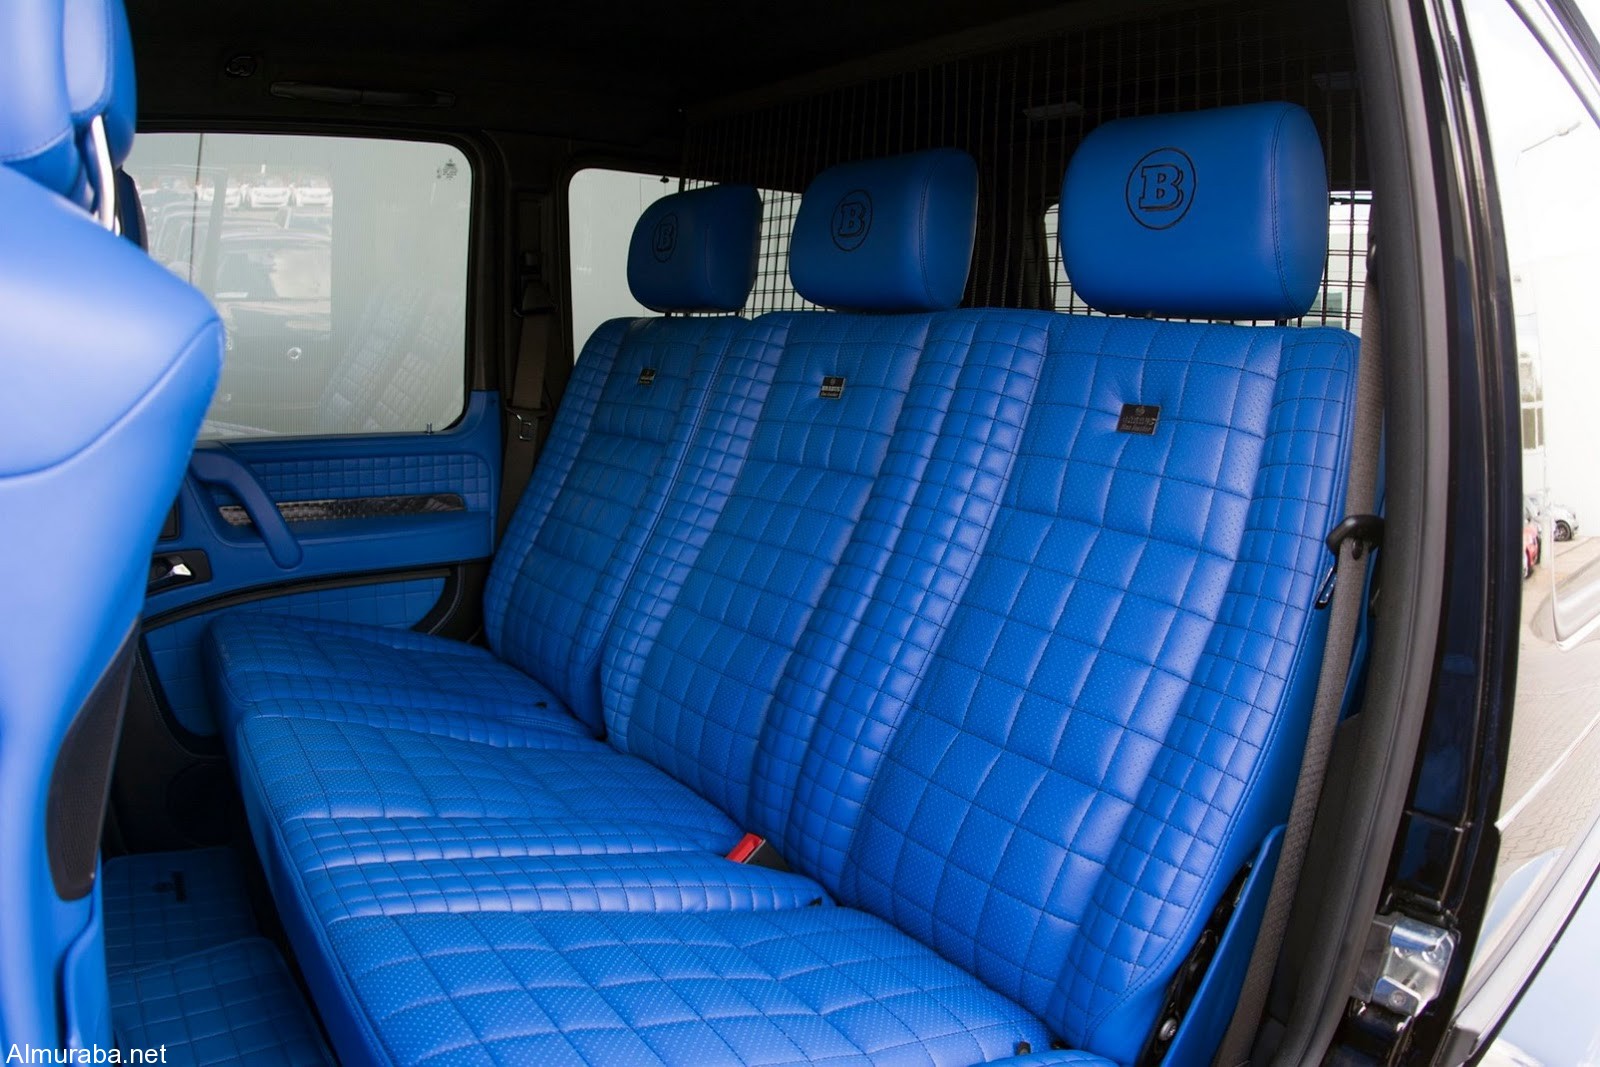 brabus-500-4x4-blue-interior-5